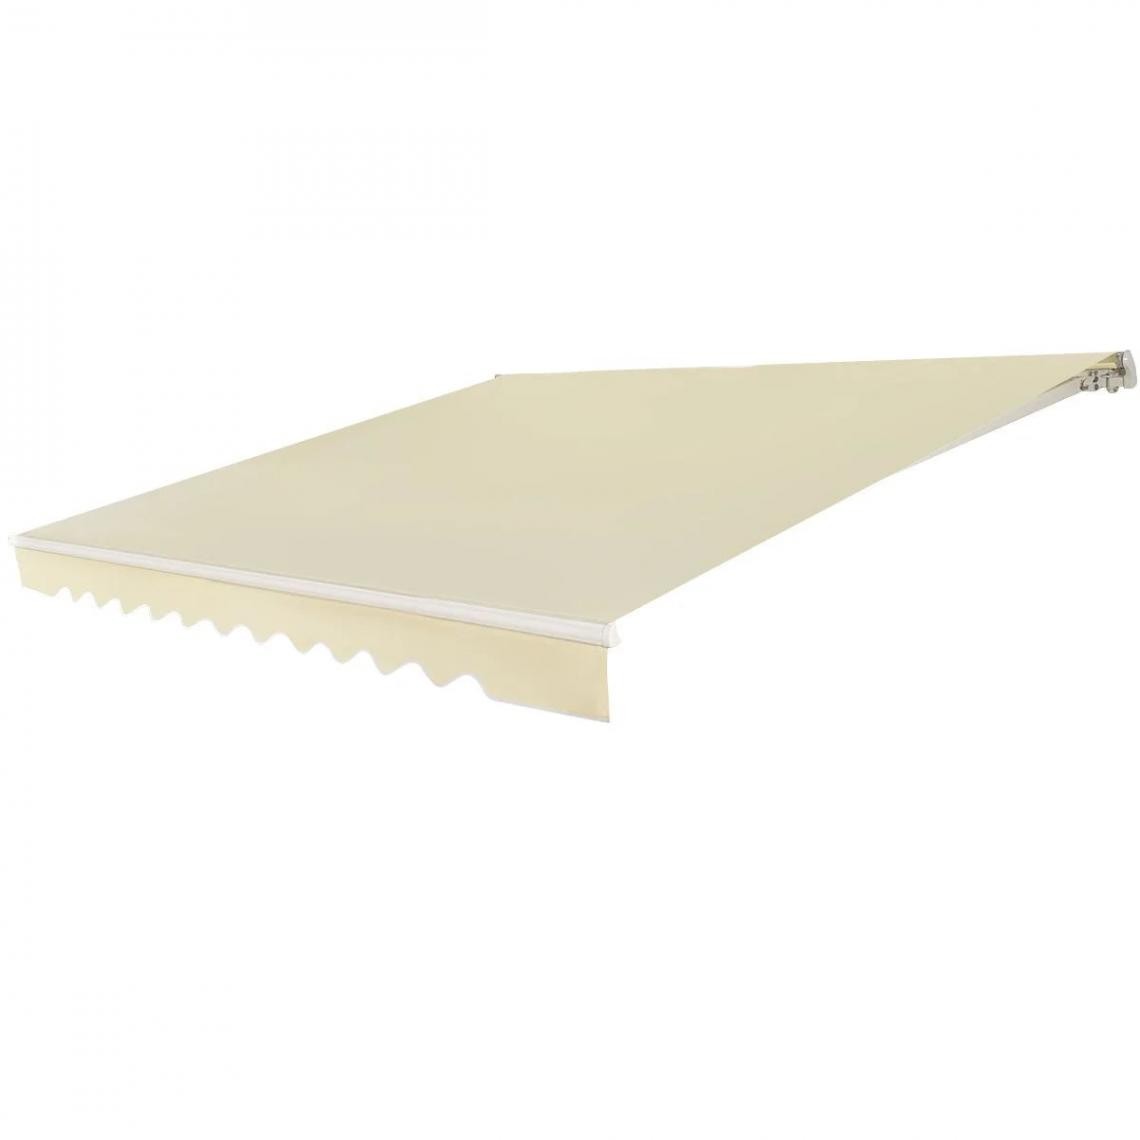 Helloshop26 - Store banne de balcon rétractable 3,6 x 3 m tissu résistant aux UV et à l'eau angle réglable 5-35° beige 20_0001103 - Store banne